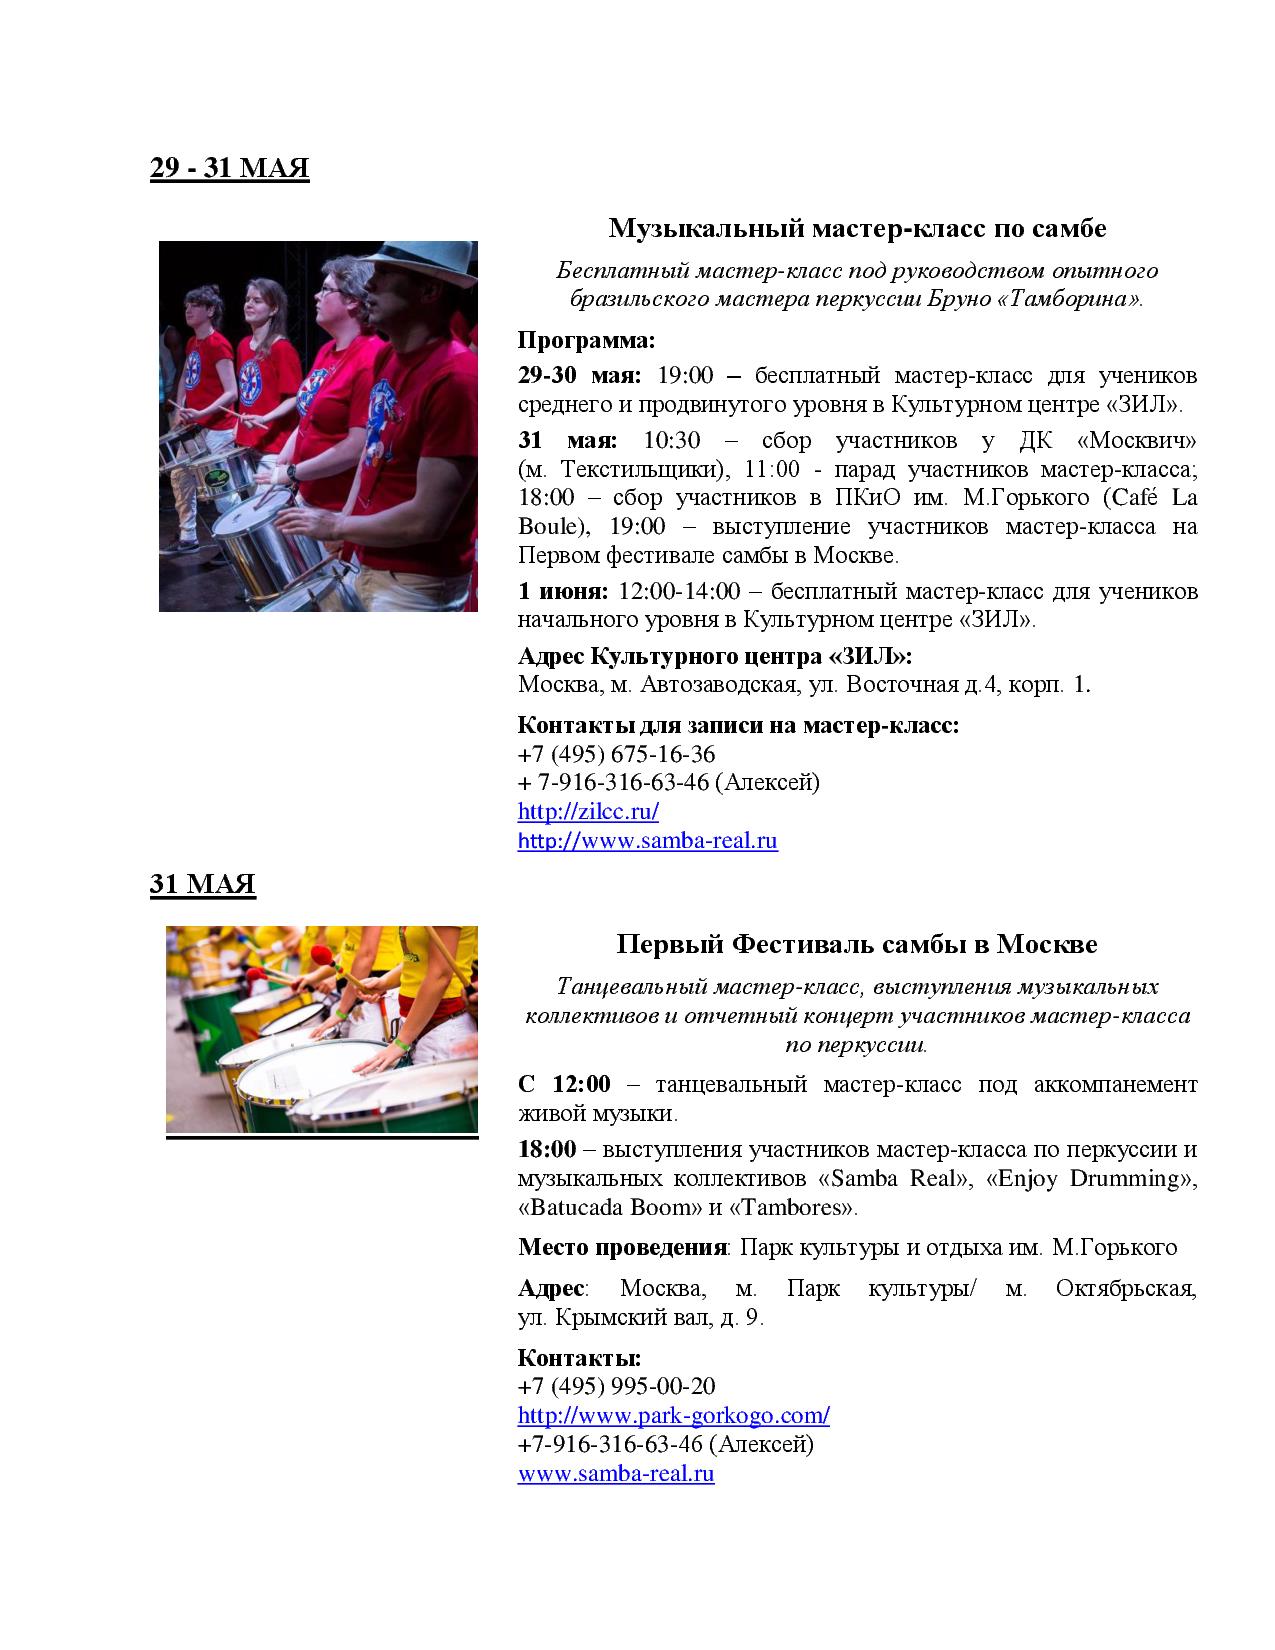  Открытие фестиваля «Дни Бразилии в России 2014»  - фото 6